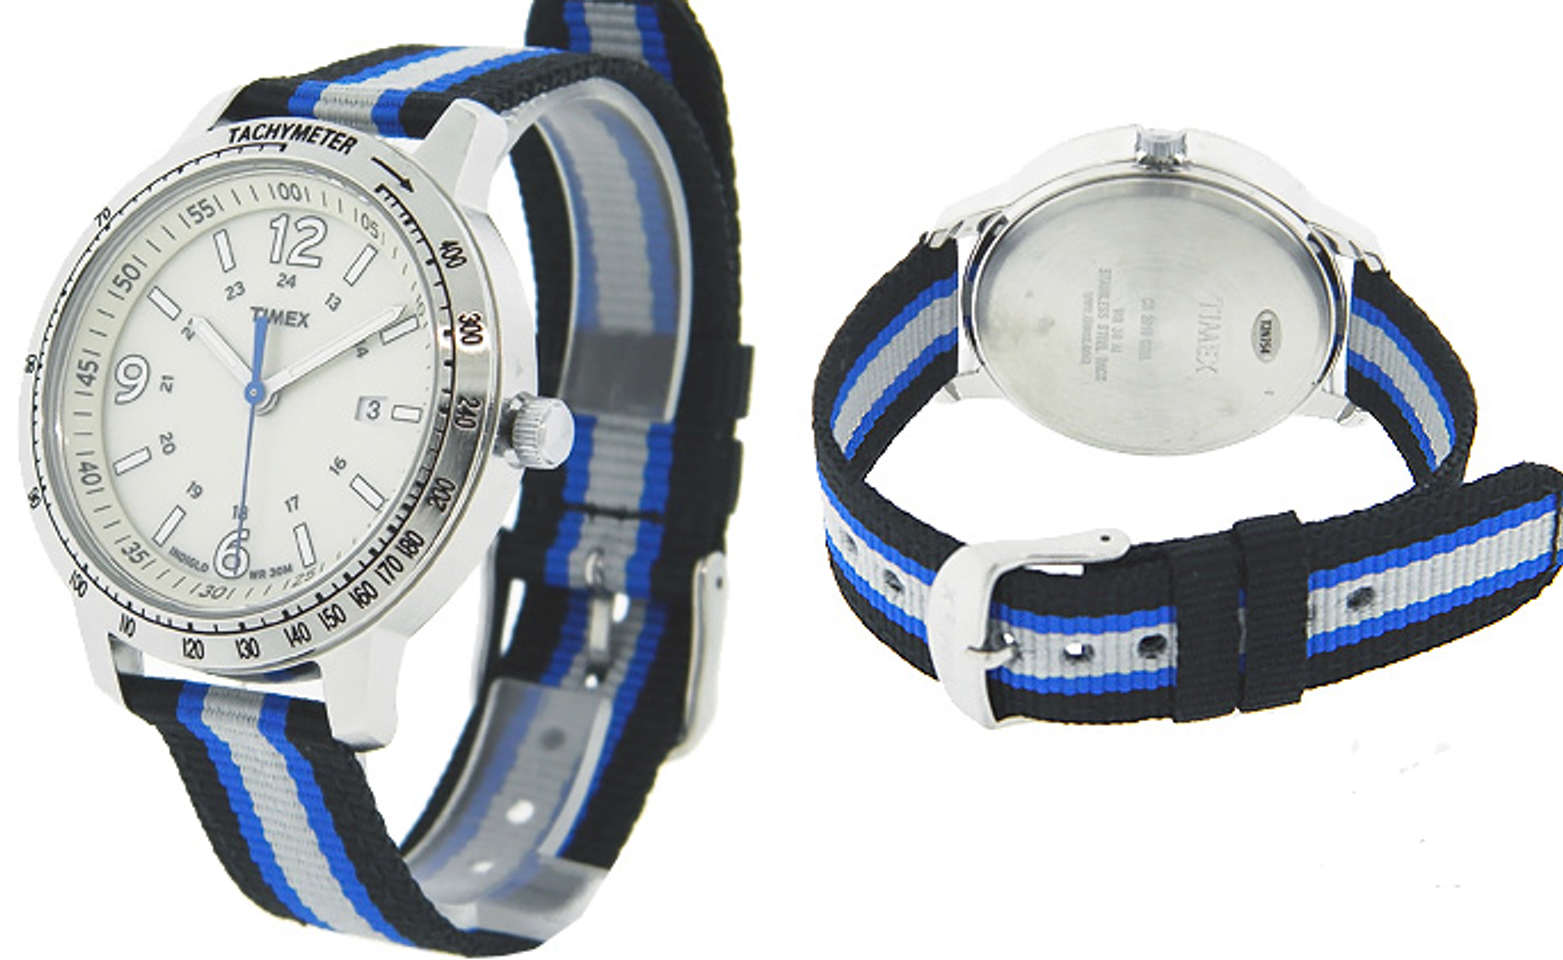 Đồng hồ Timex T2N754 là sự lựa chọn hoàn hảo dành cho phái mạnh thể hiện cá tính, đam mê